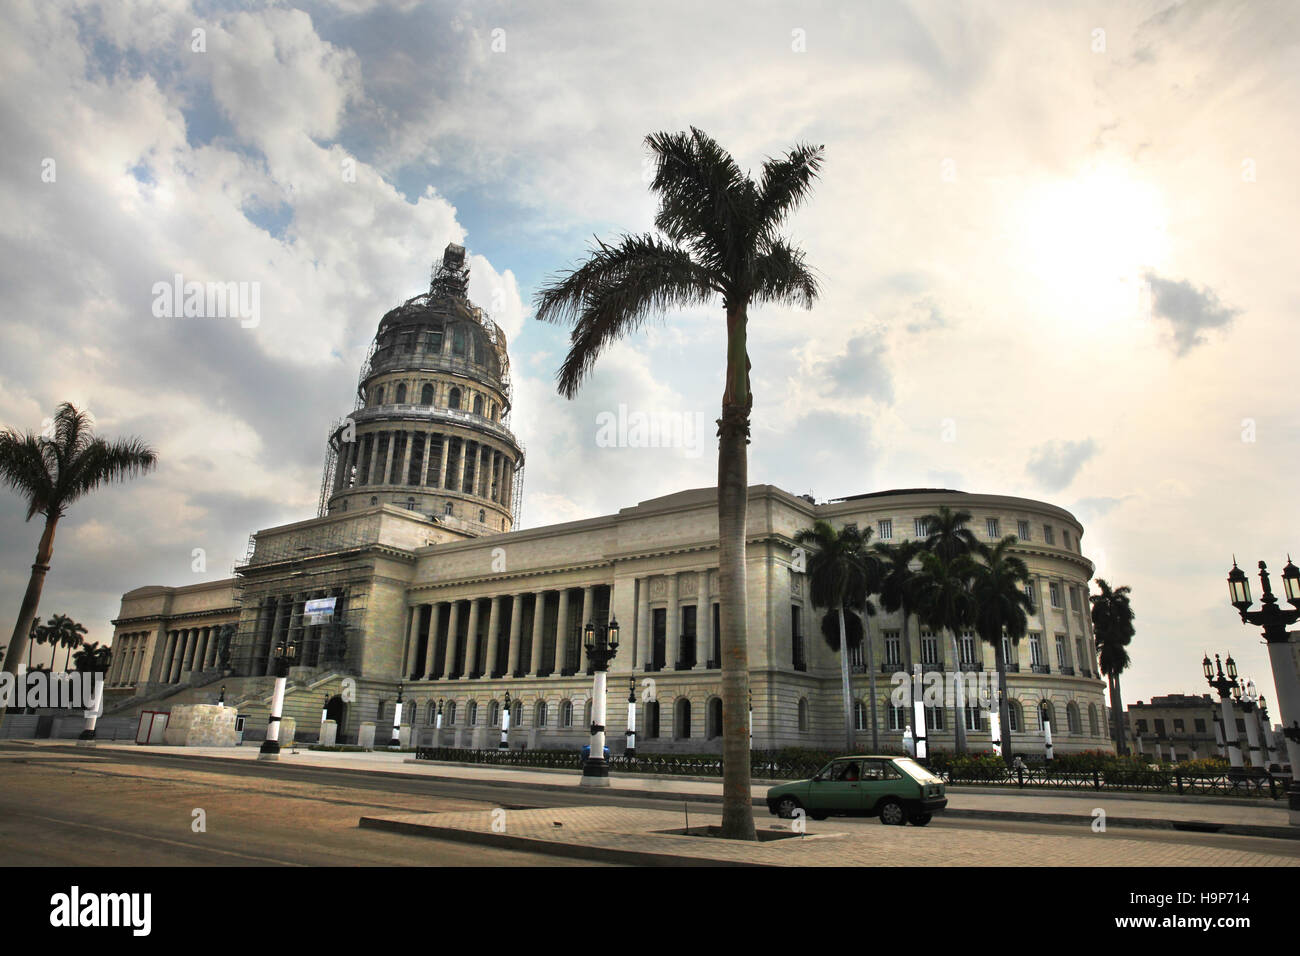 Capitolio o nazionale di Capitol Building a l'Avana, Cuba. In precedenza la sede del governo cubano ora Accademia delle Scienze. Foto Stock